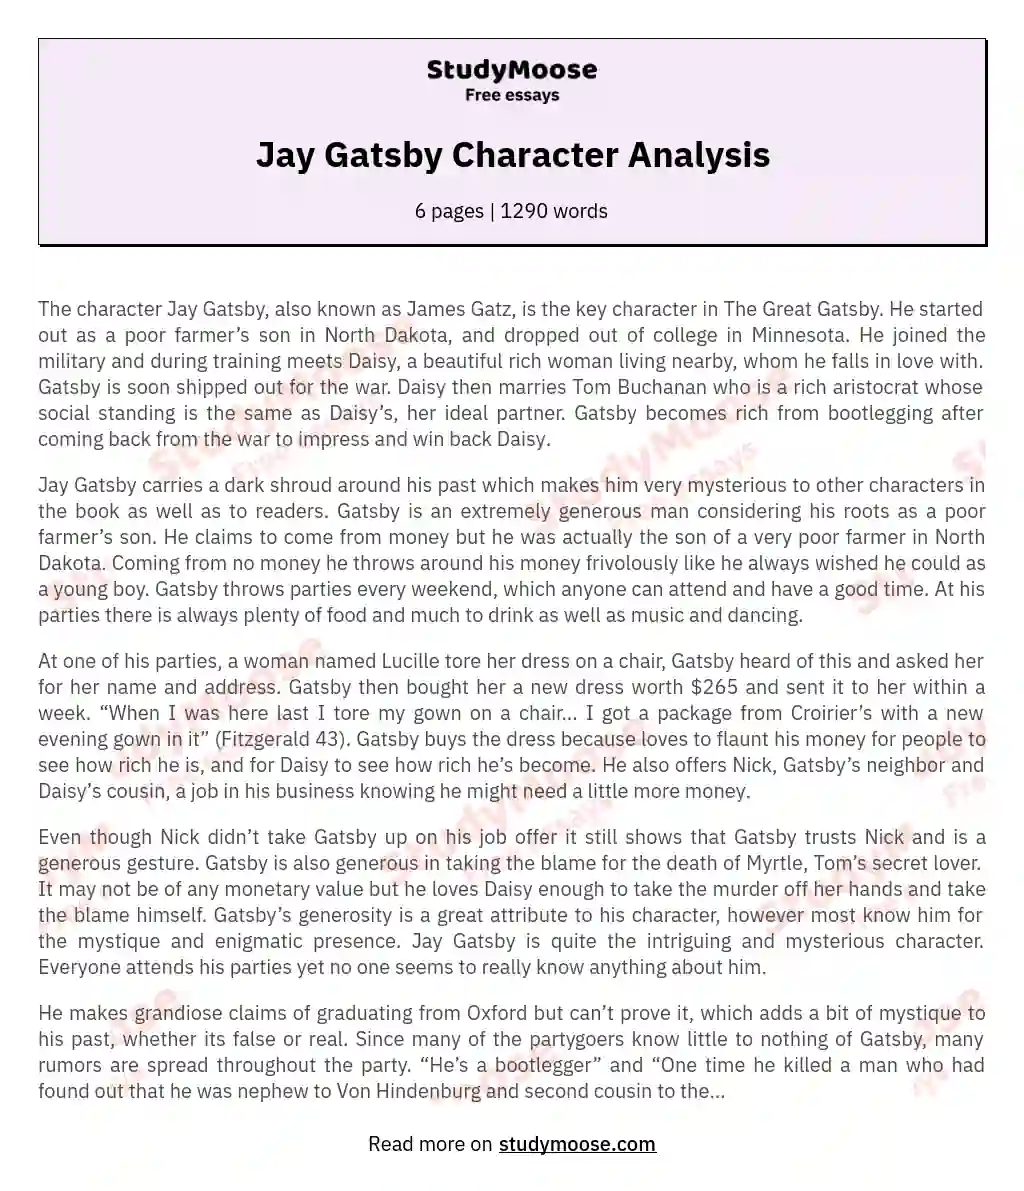 Jay Gatsby Character Analysis essay